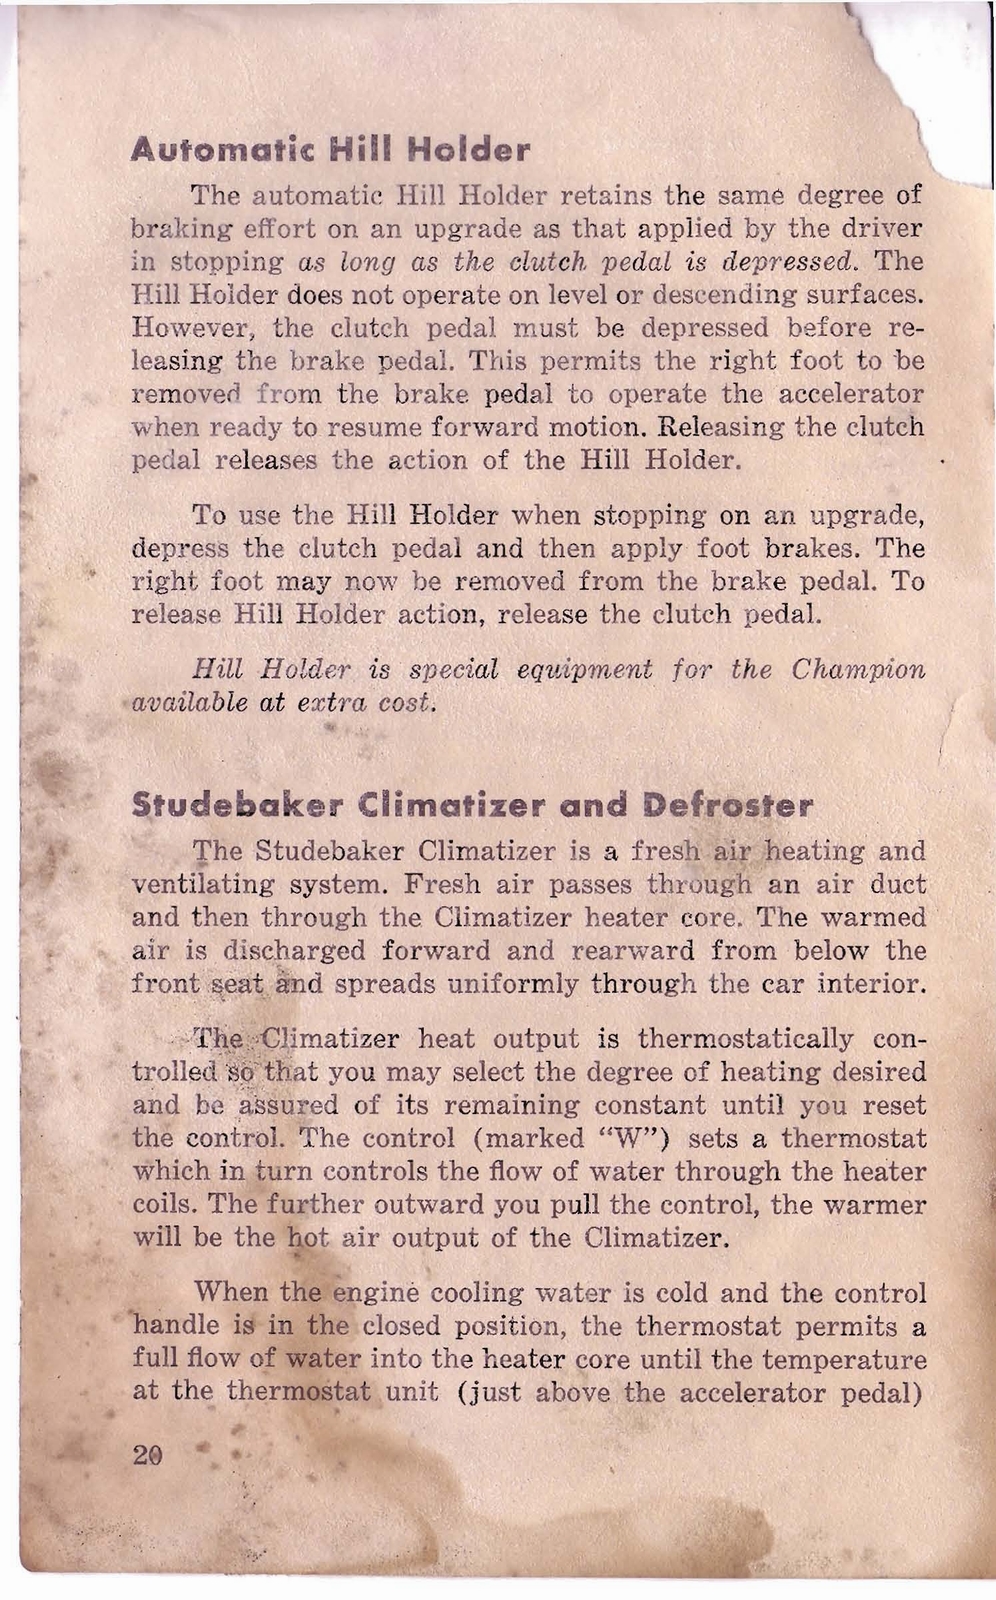 n_1950 Studebaker Commander Owners Guide-22.jpg